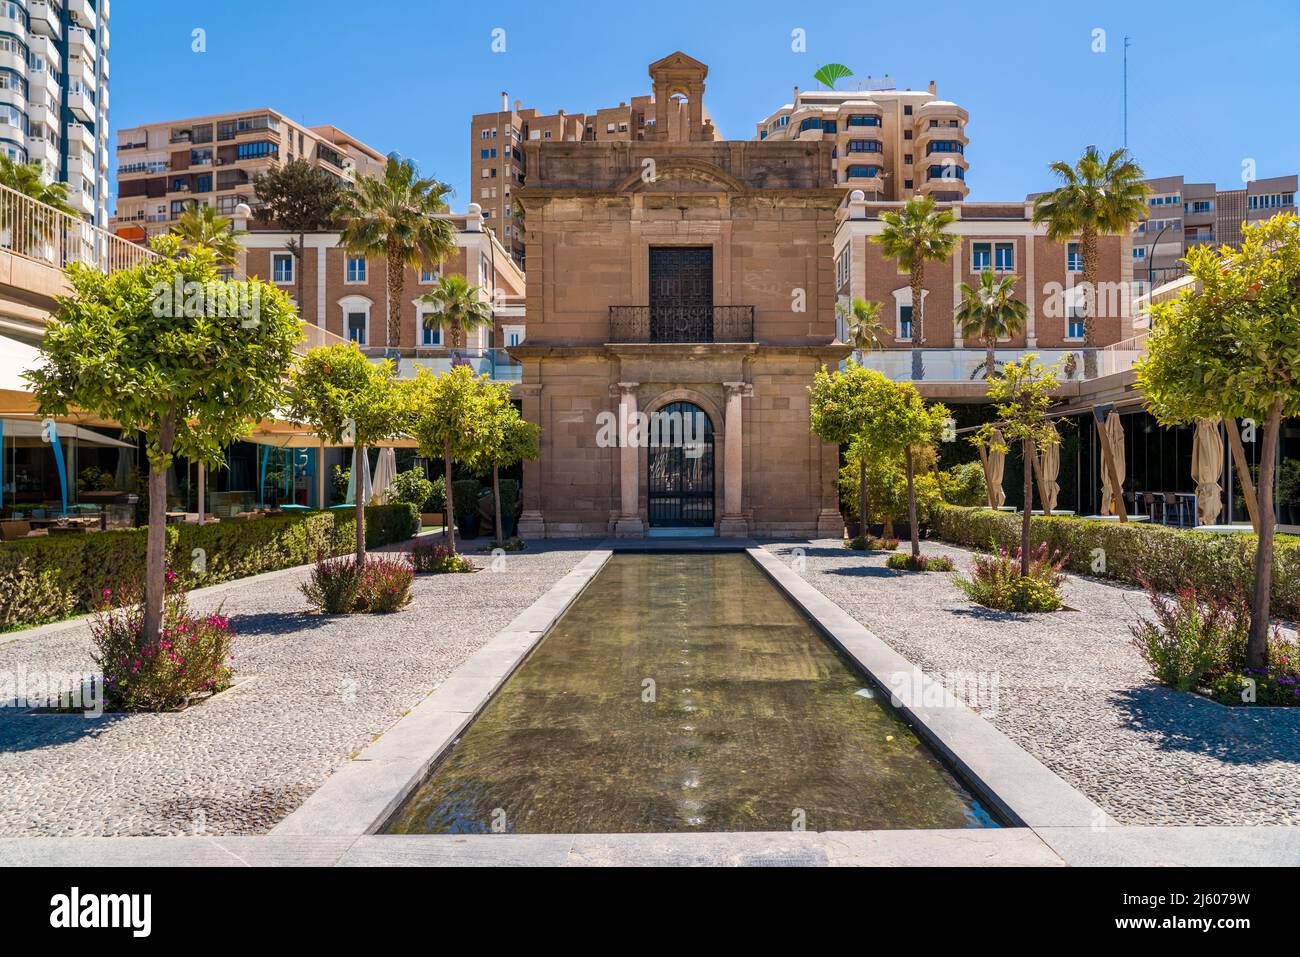 Die Kapelle des Hafens von Malaga befindet sich in der Stadt Málaga im Bereich des Hafenhafens 'Muelle Uno'. Errichtet als Oratorium im Jahre 1531 weiter draußen im Hafengebiet. Stockfoto